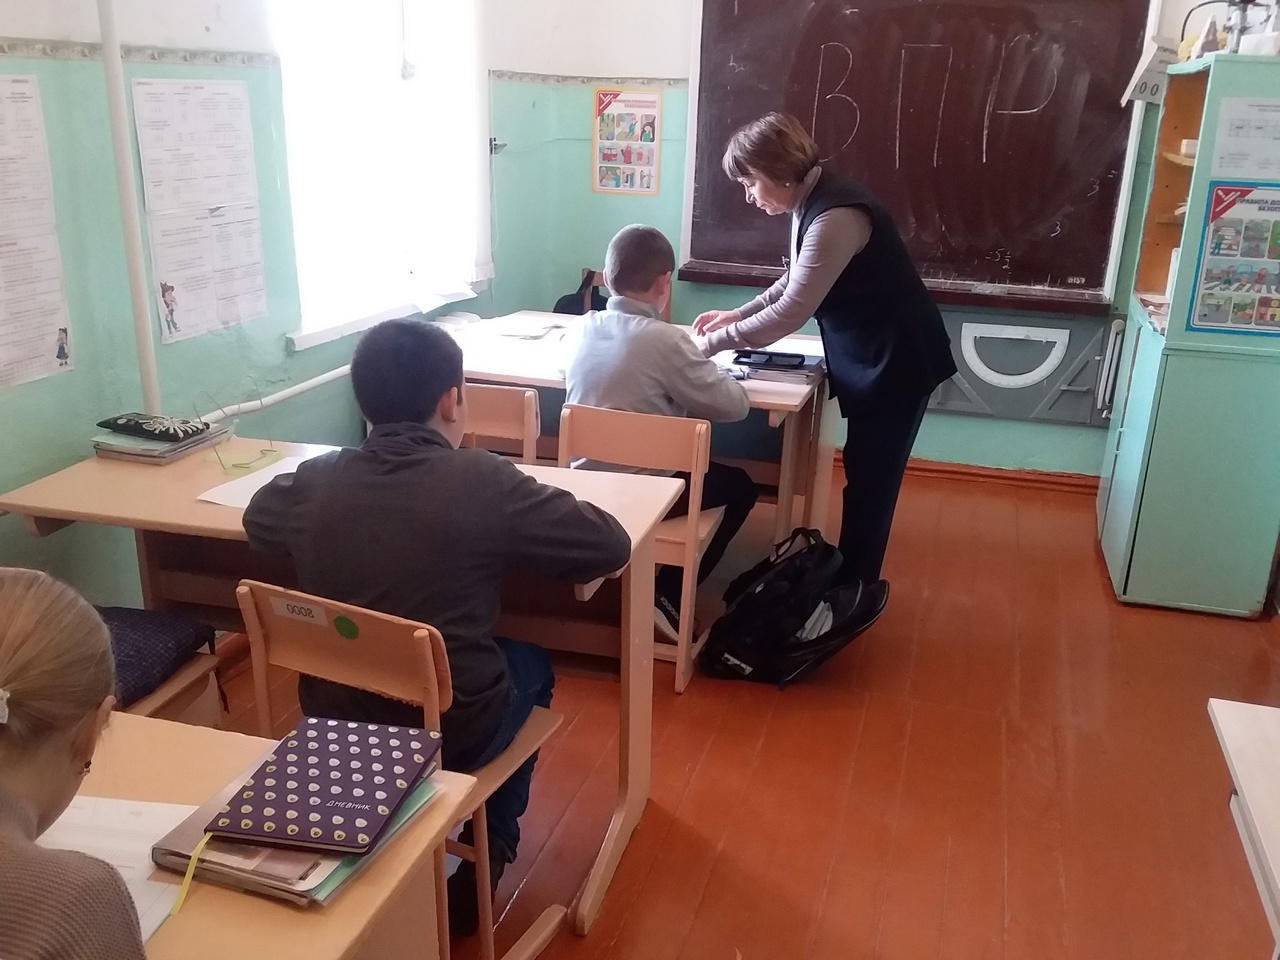 В школах начались Всероссийские проверочные работы (ВПР) для учеников 5-9 классов. Они будут проходить с 19 сентября по 24 октября. Сегодня ученики 5 класса приняли участие в ВПР по математике..